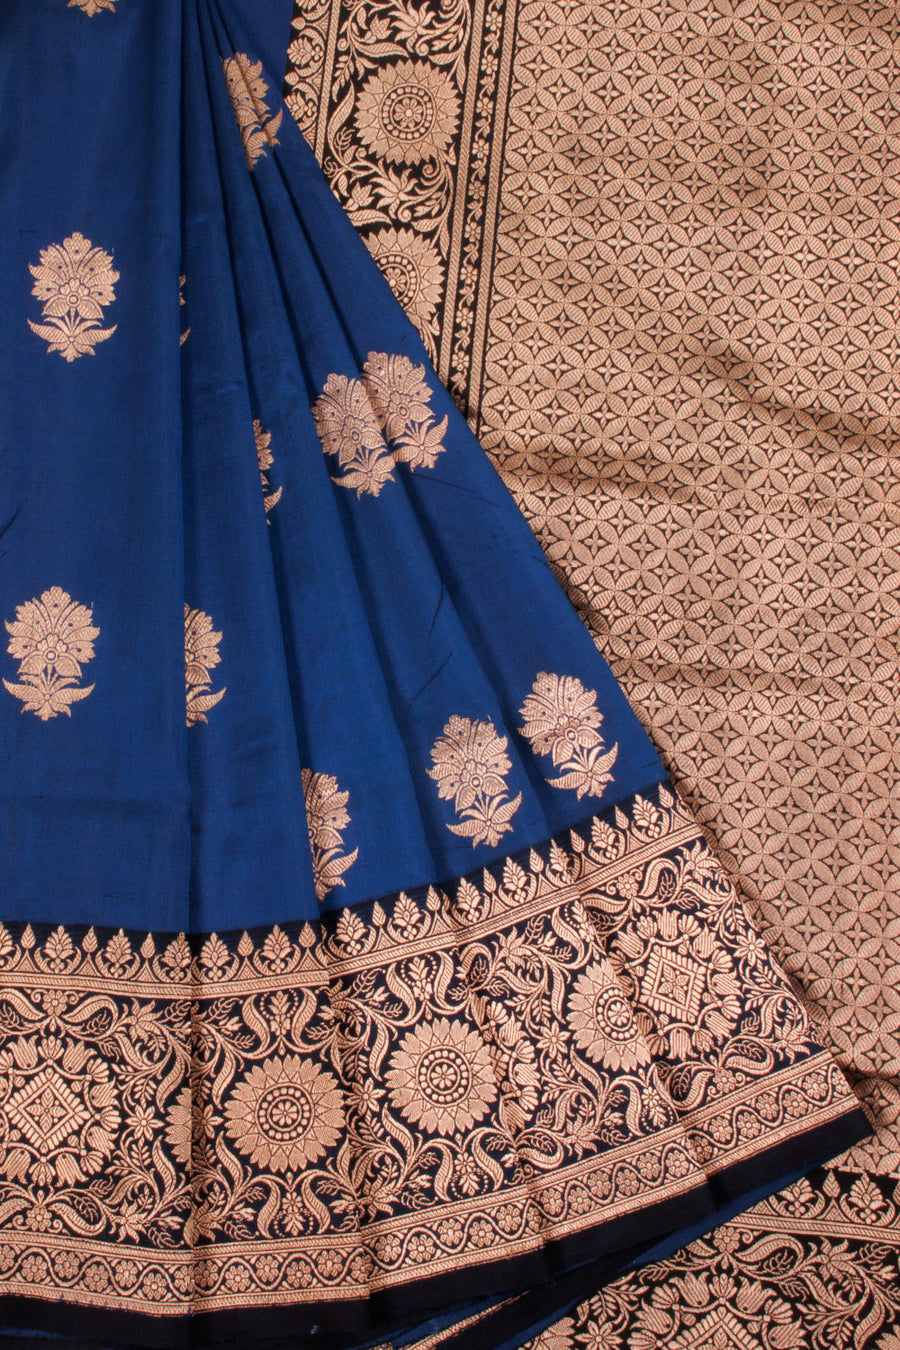 Handwoven Banarasi Kadhwa Katan Silk Saree with Floral Motifs